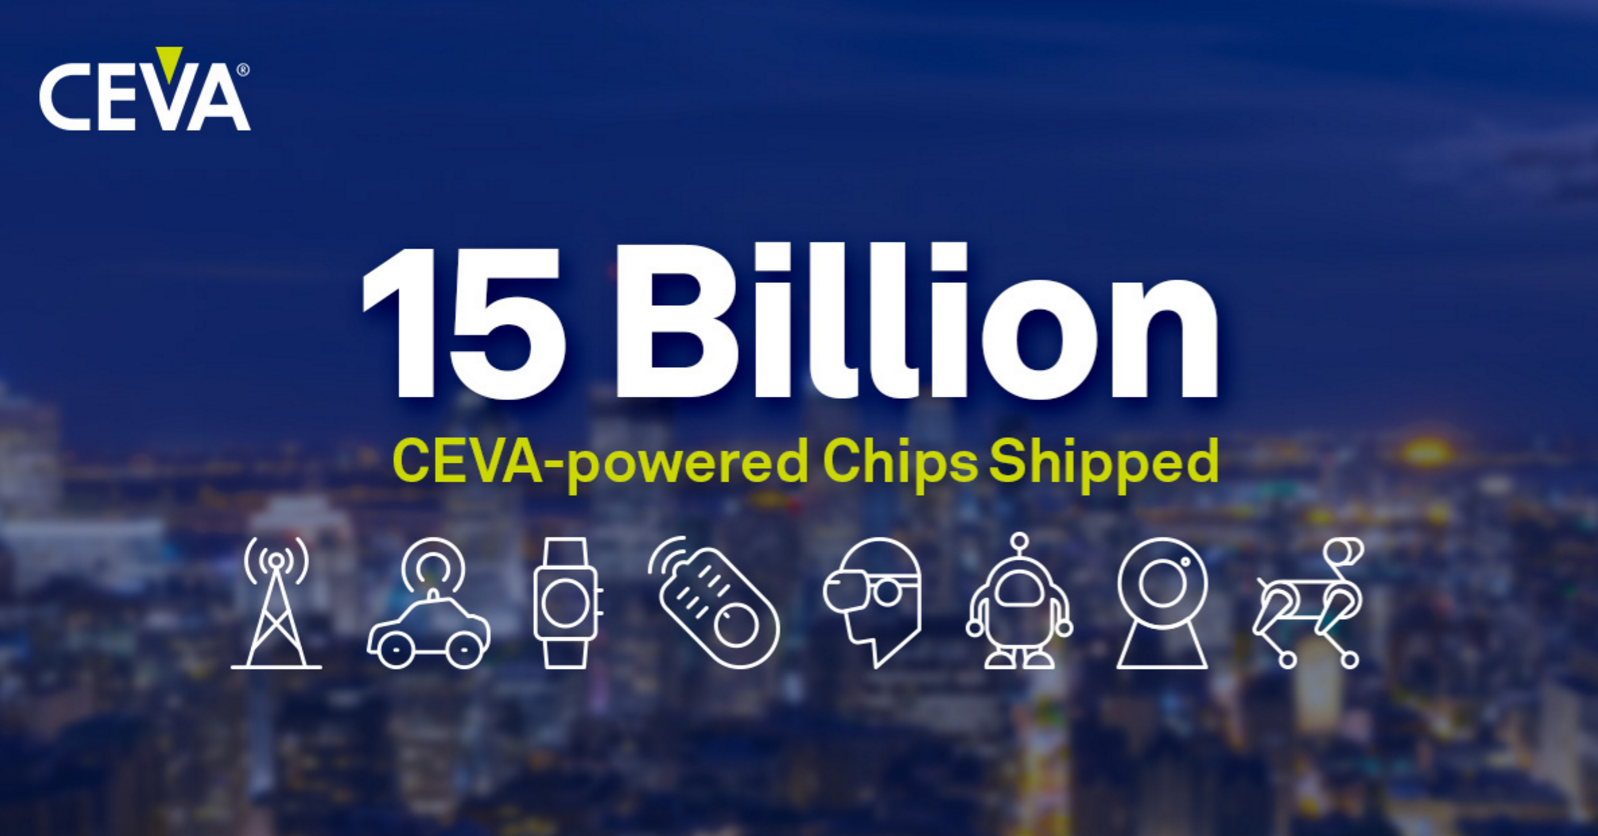 第 150 億顆CEVA 助力芯片出貨